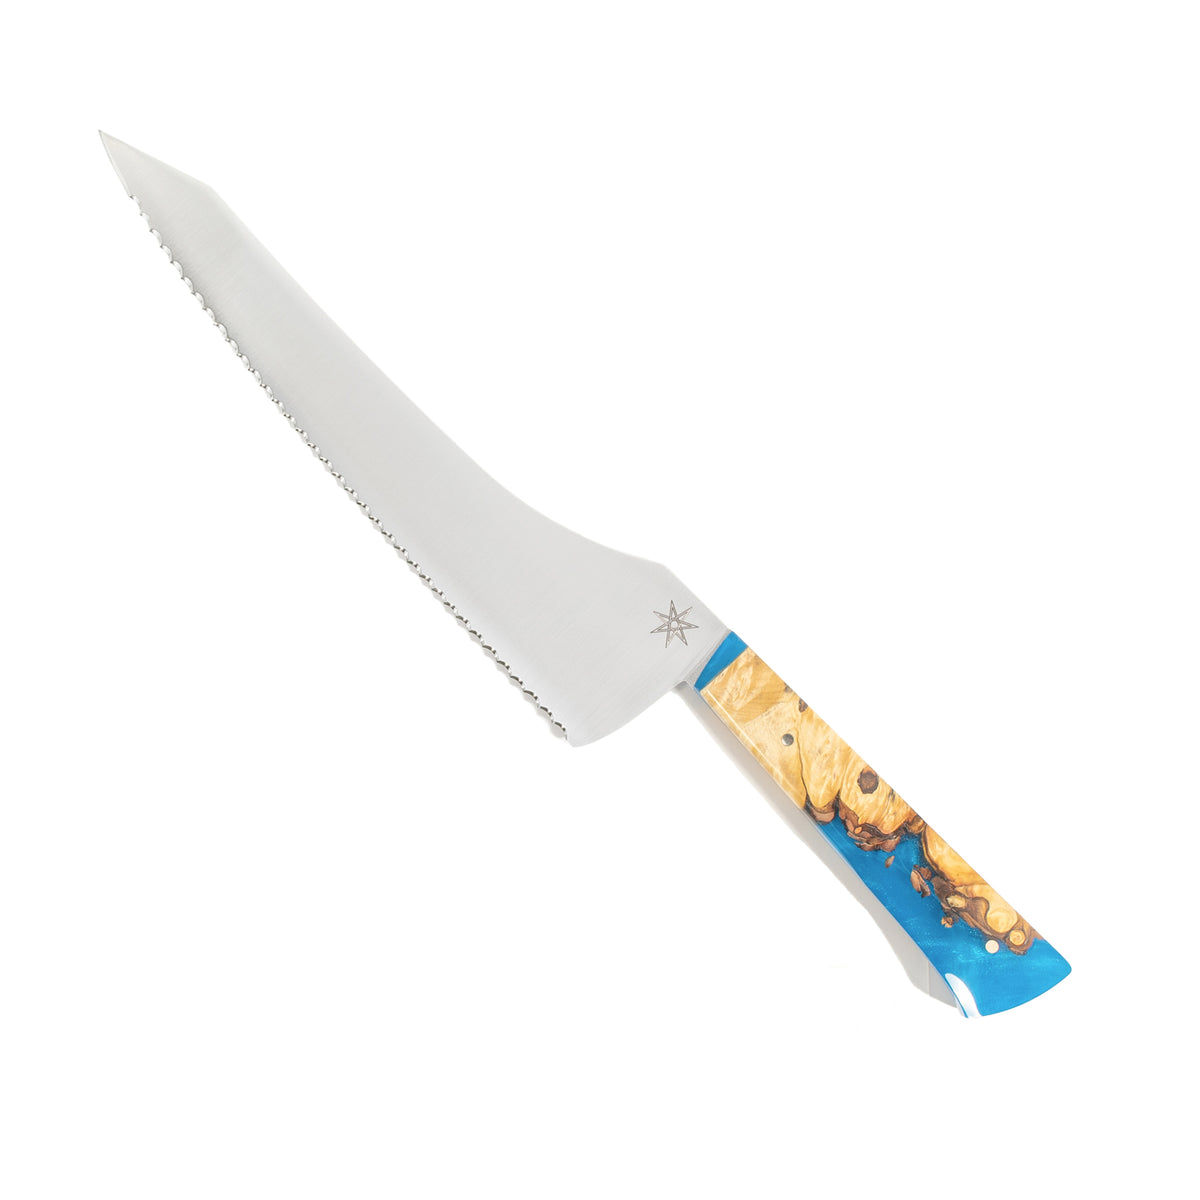 Sage Shimmer Butter Knife – The Social Kitchen